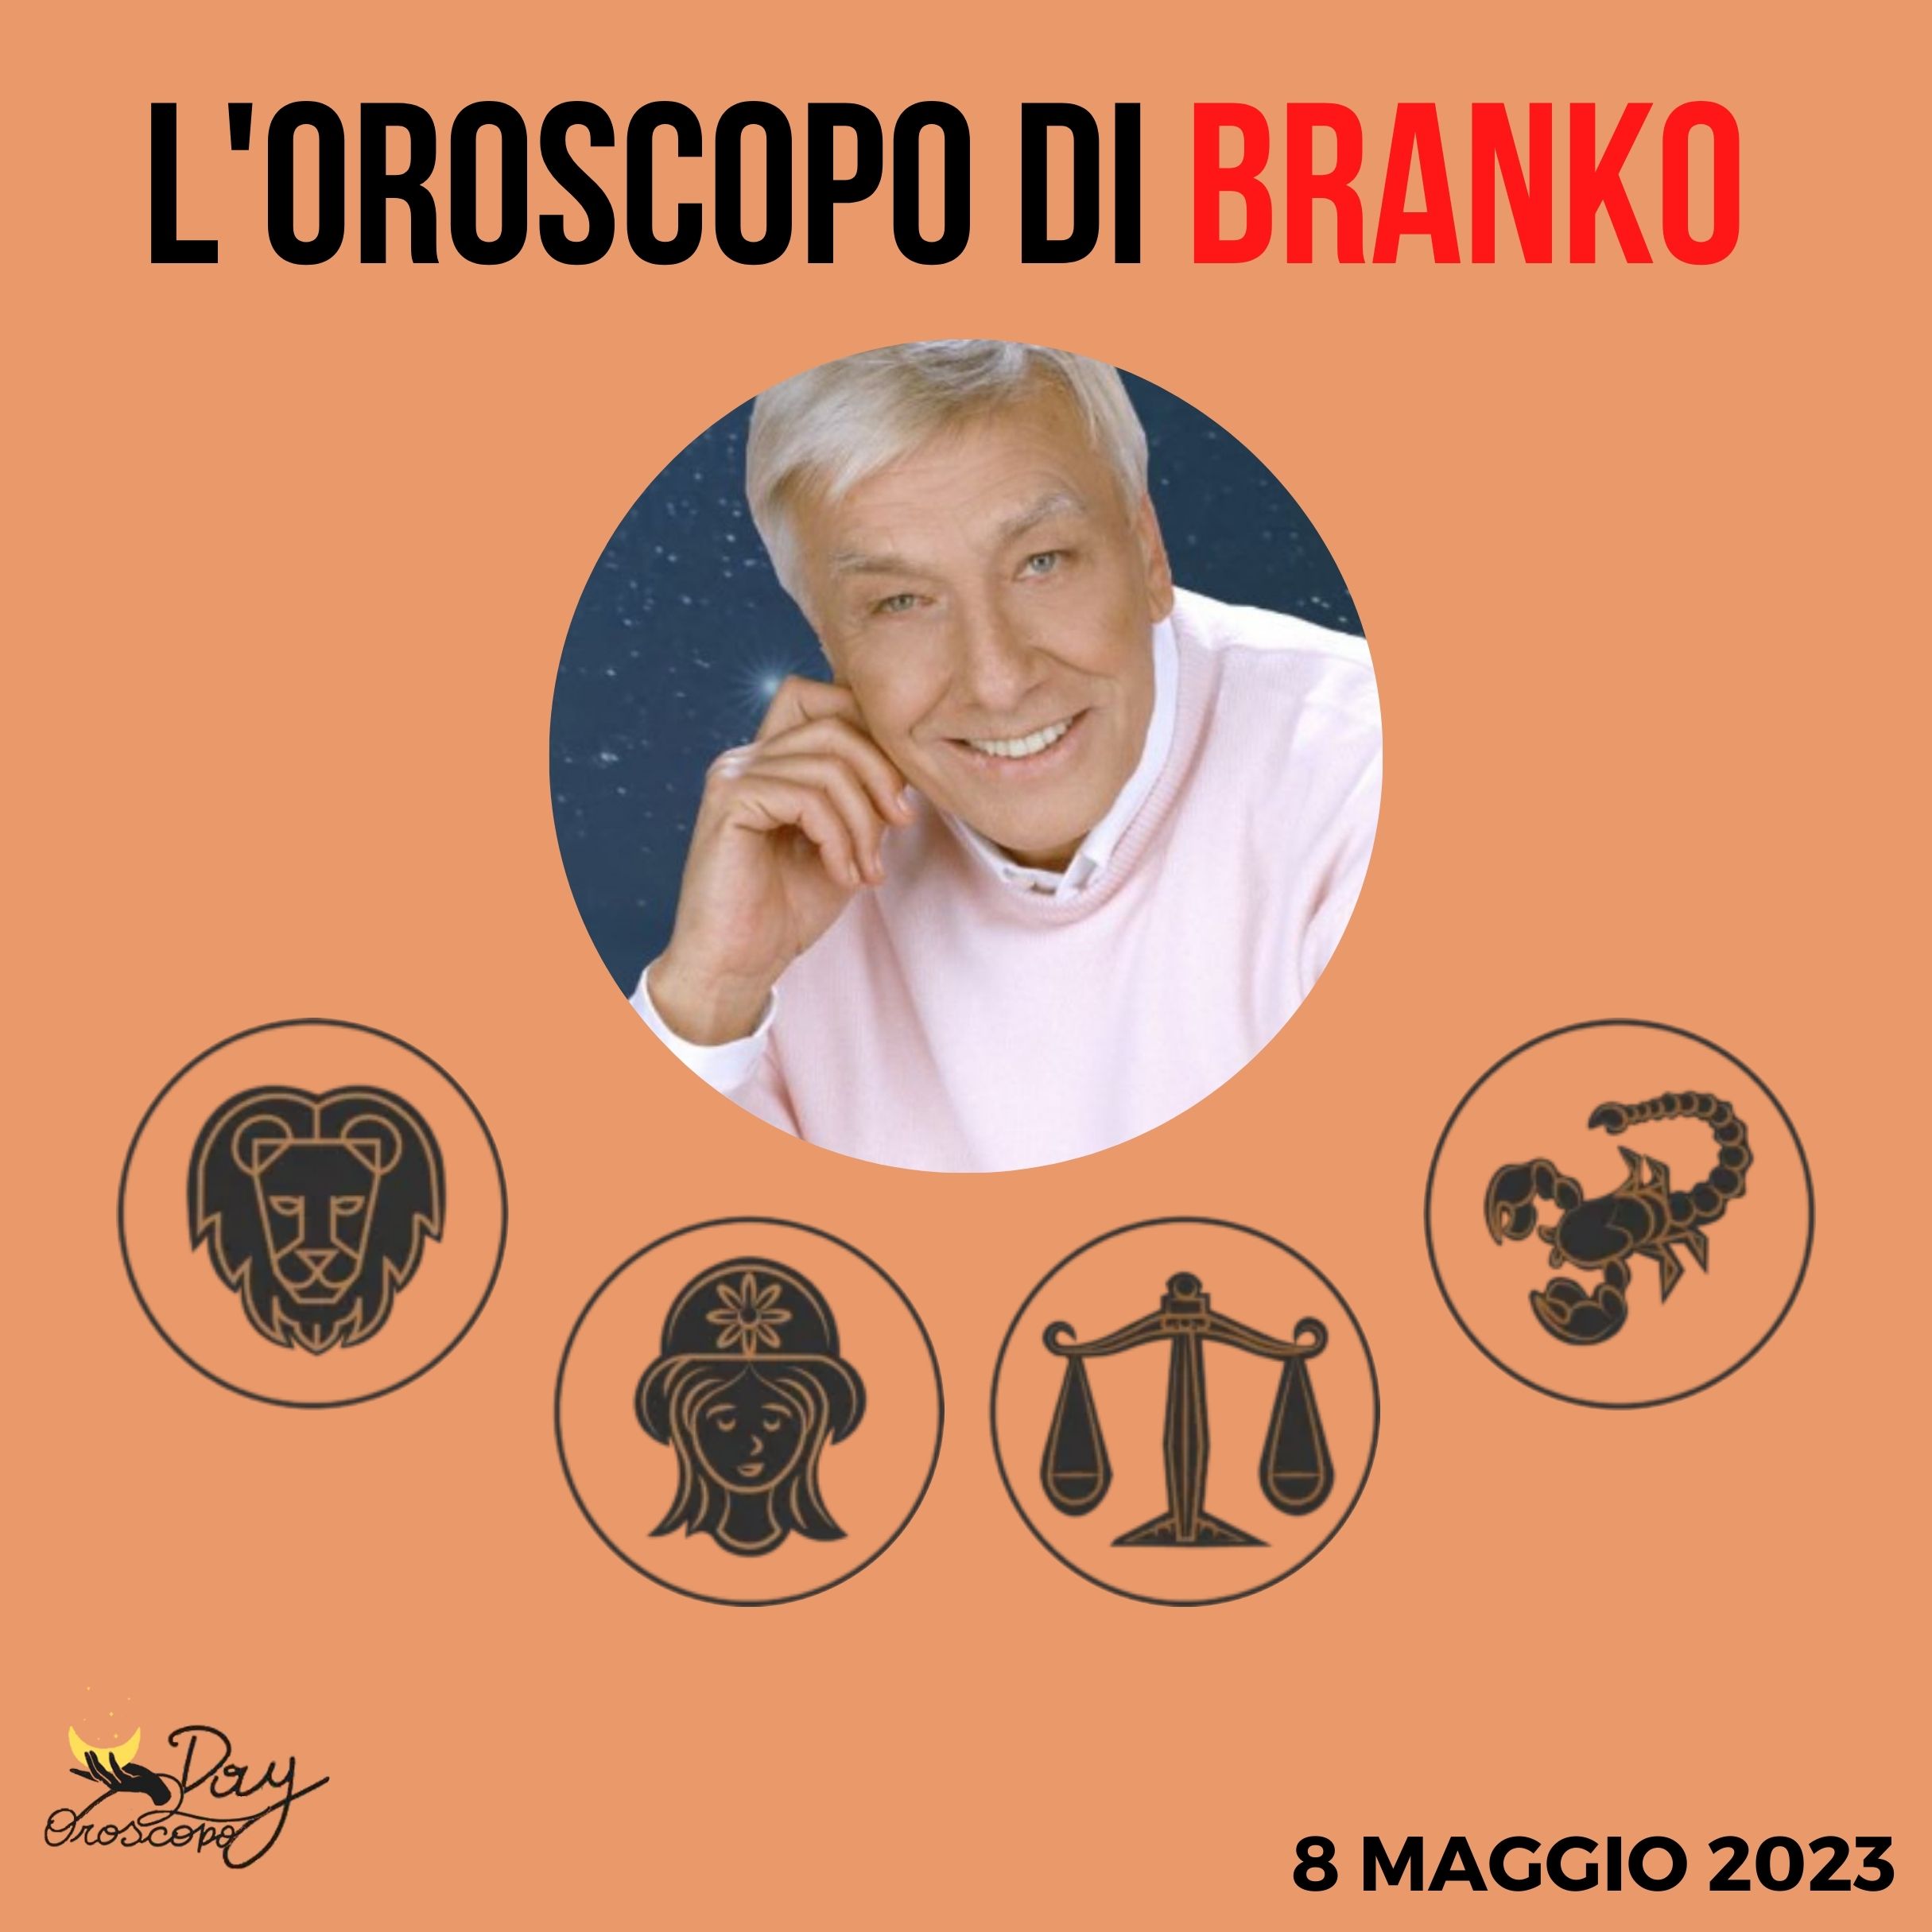 Oroscopo oggi domani Branko 8 maggio Leone Vergine Bilancia Scorpione